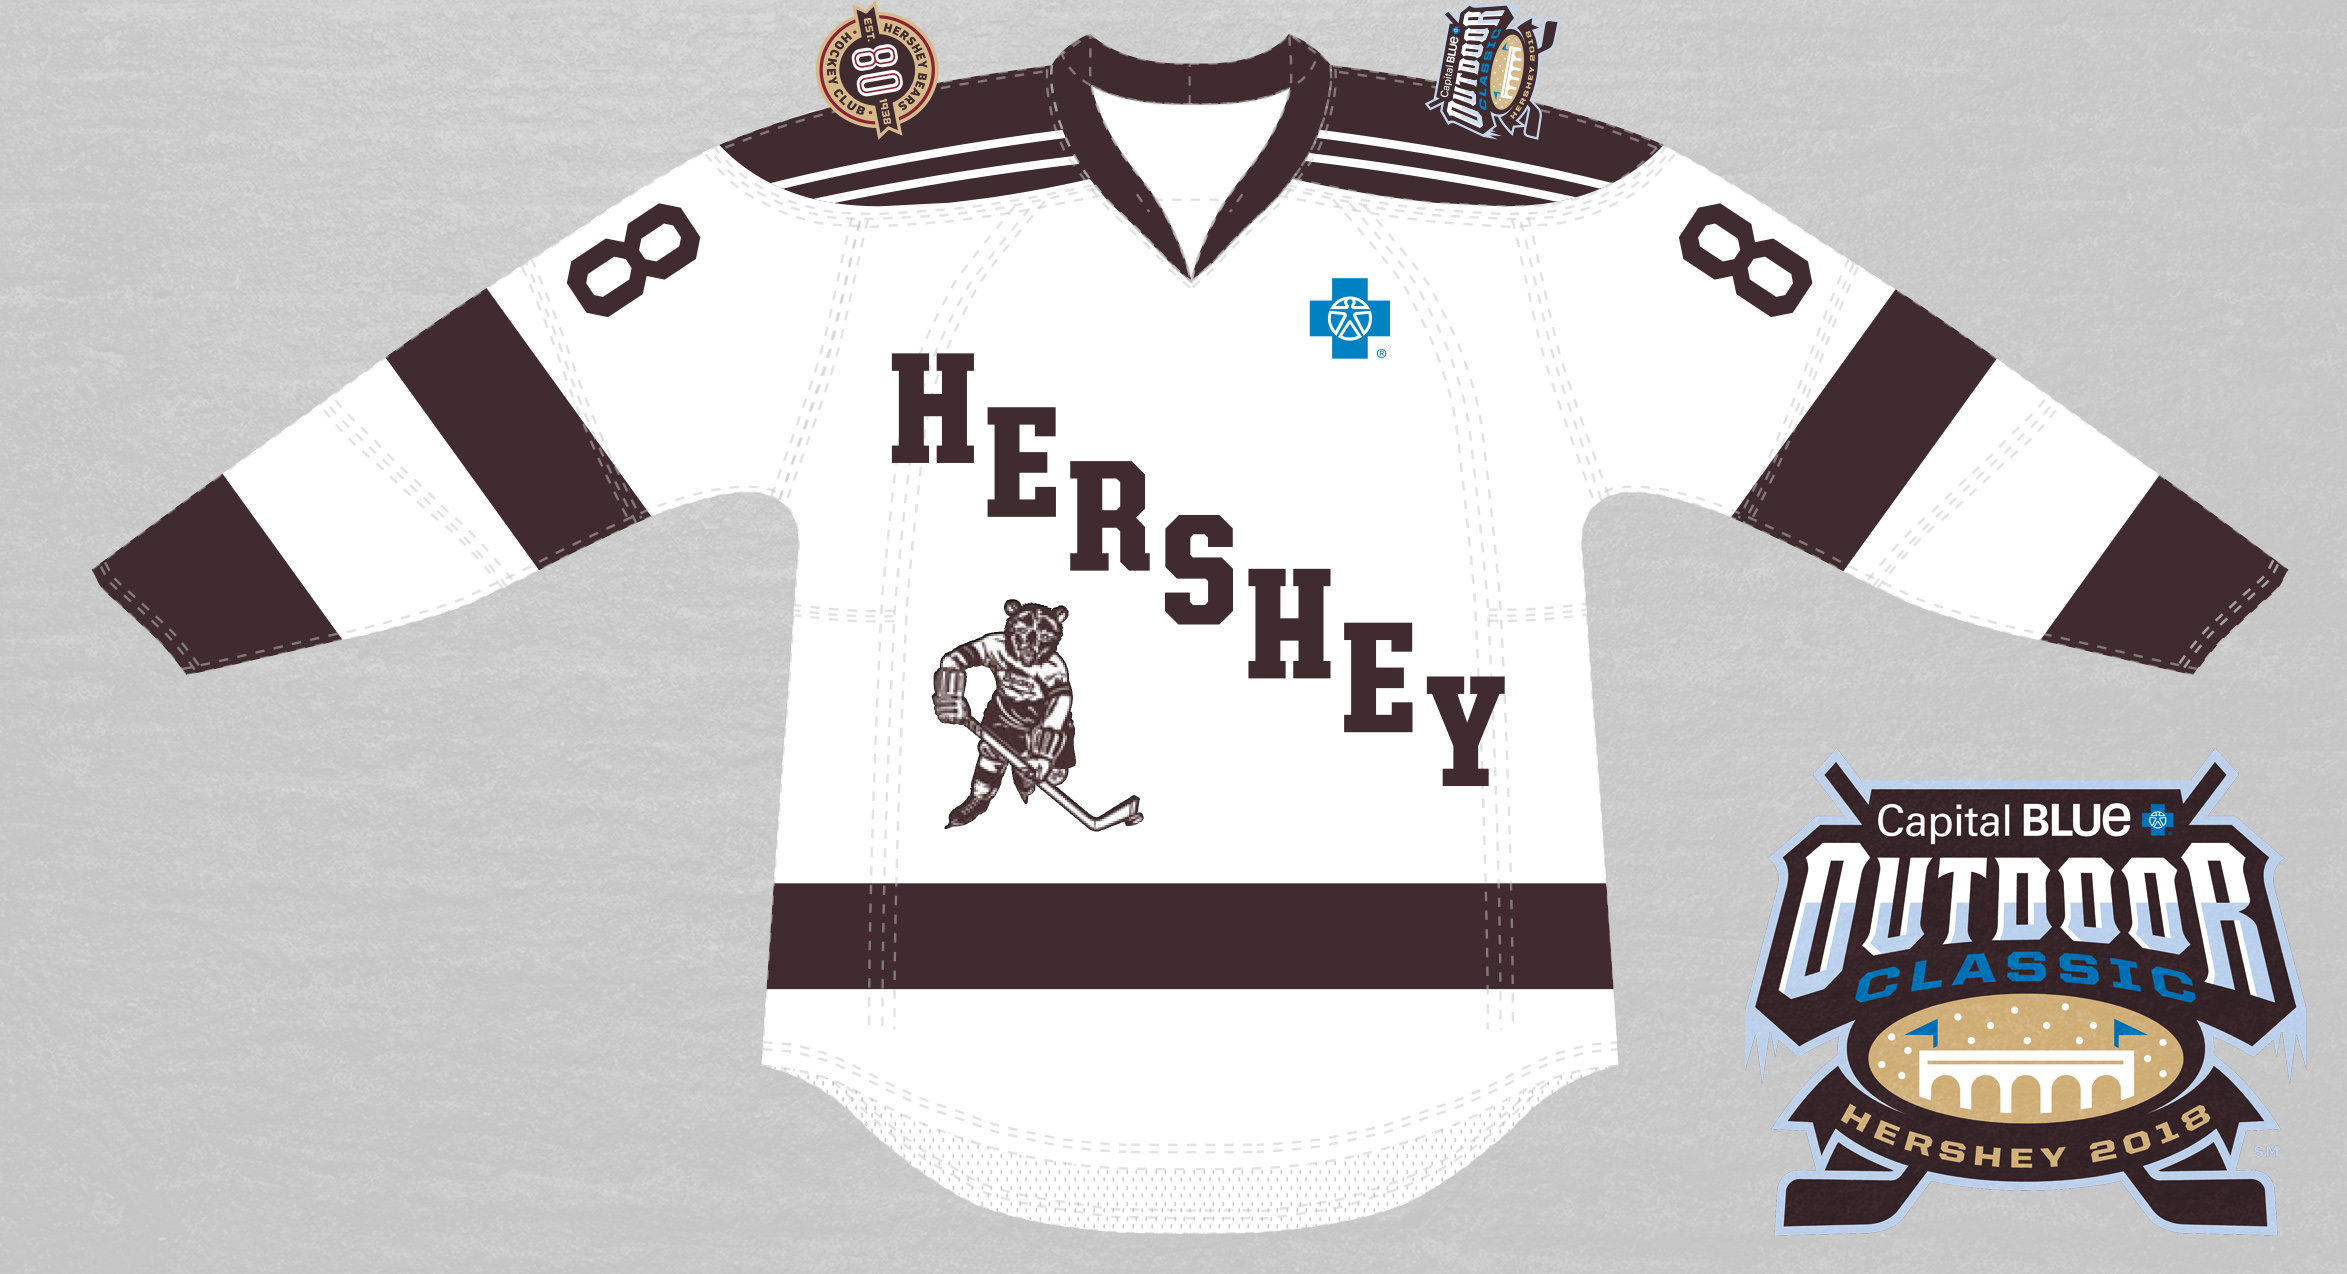 Hershey Bears Release 2018 Outdoor Classic Uniforms